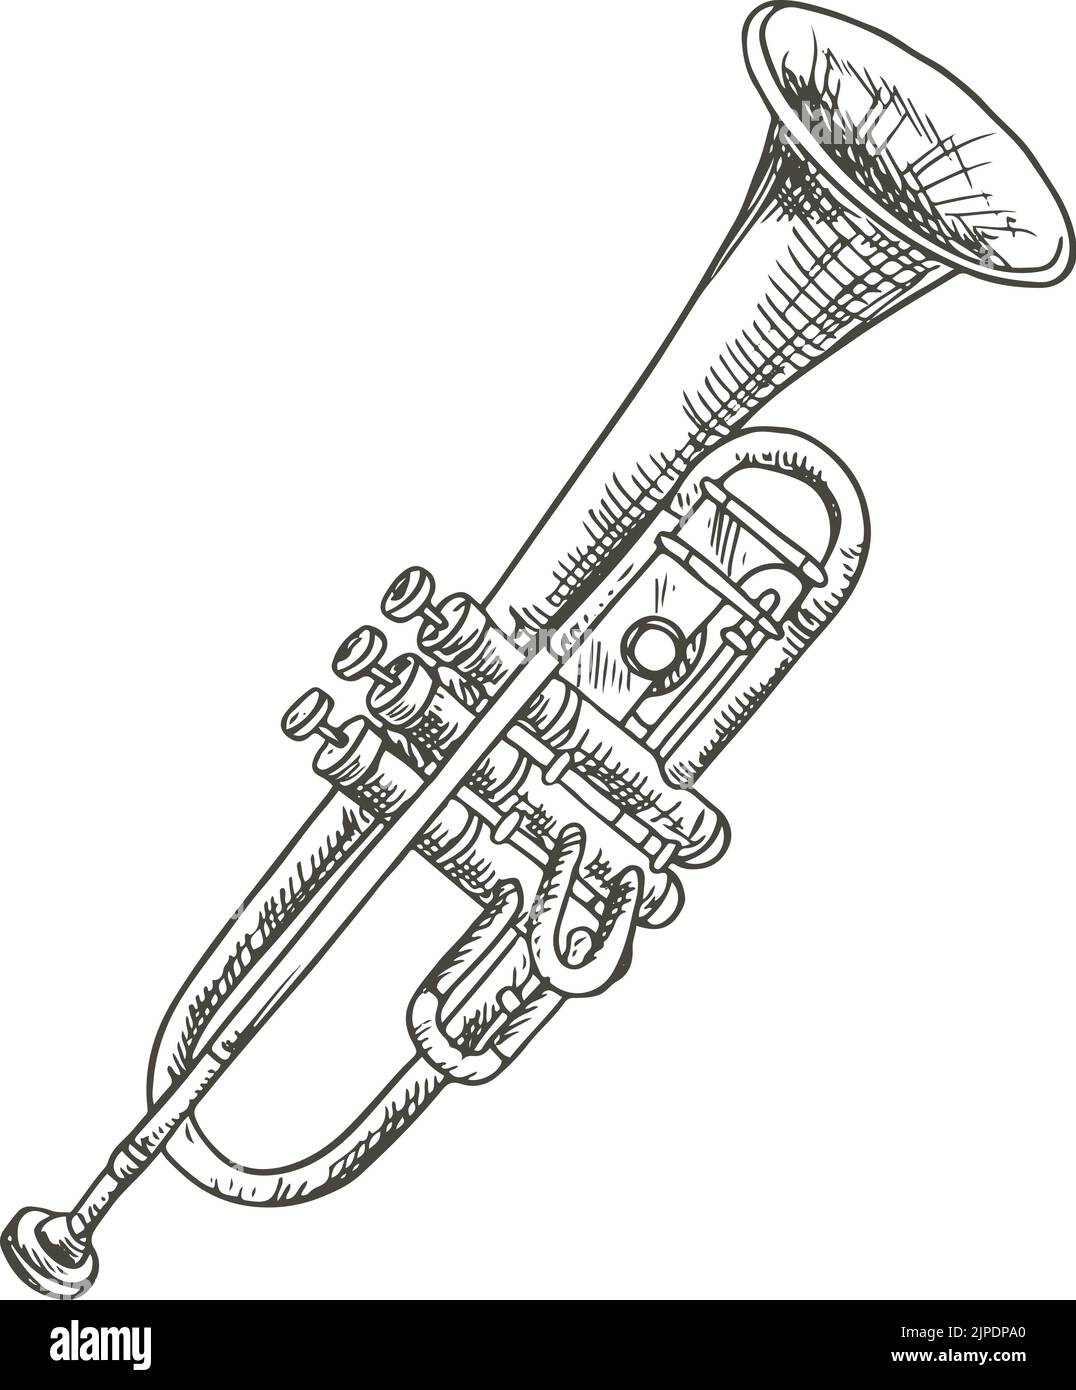 Strumento musicale tromba cornetto vettoriale isolato. Corno vettoriale o pipa orchestrale, flugelhorn jazz Illustrazione Vettoriale